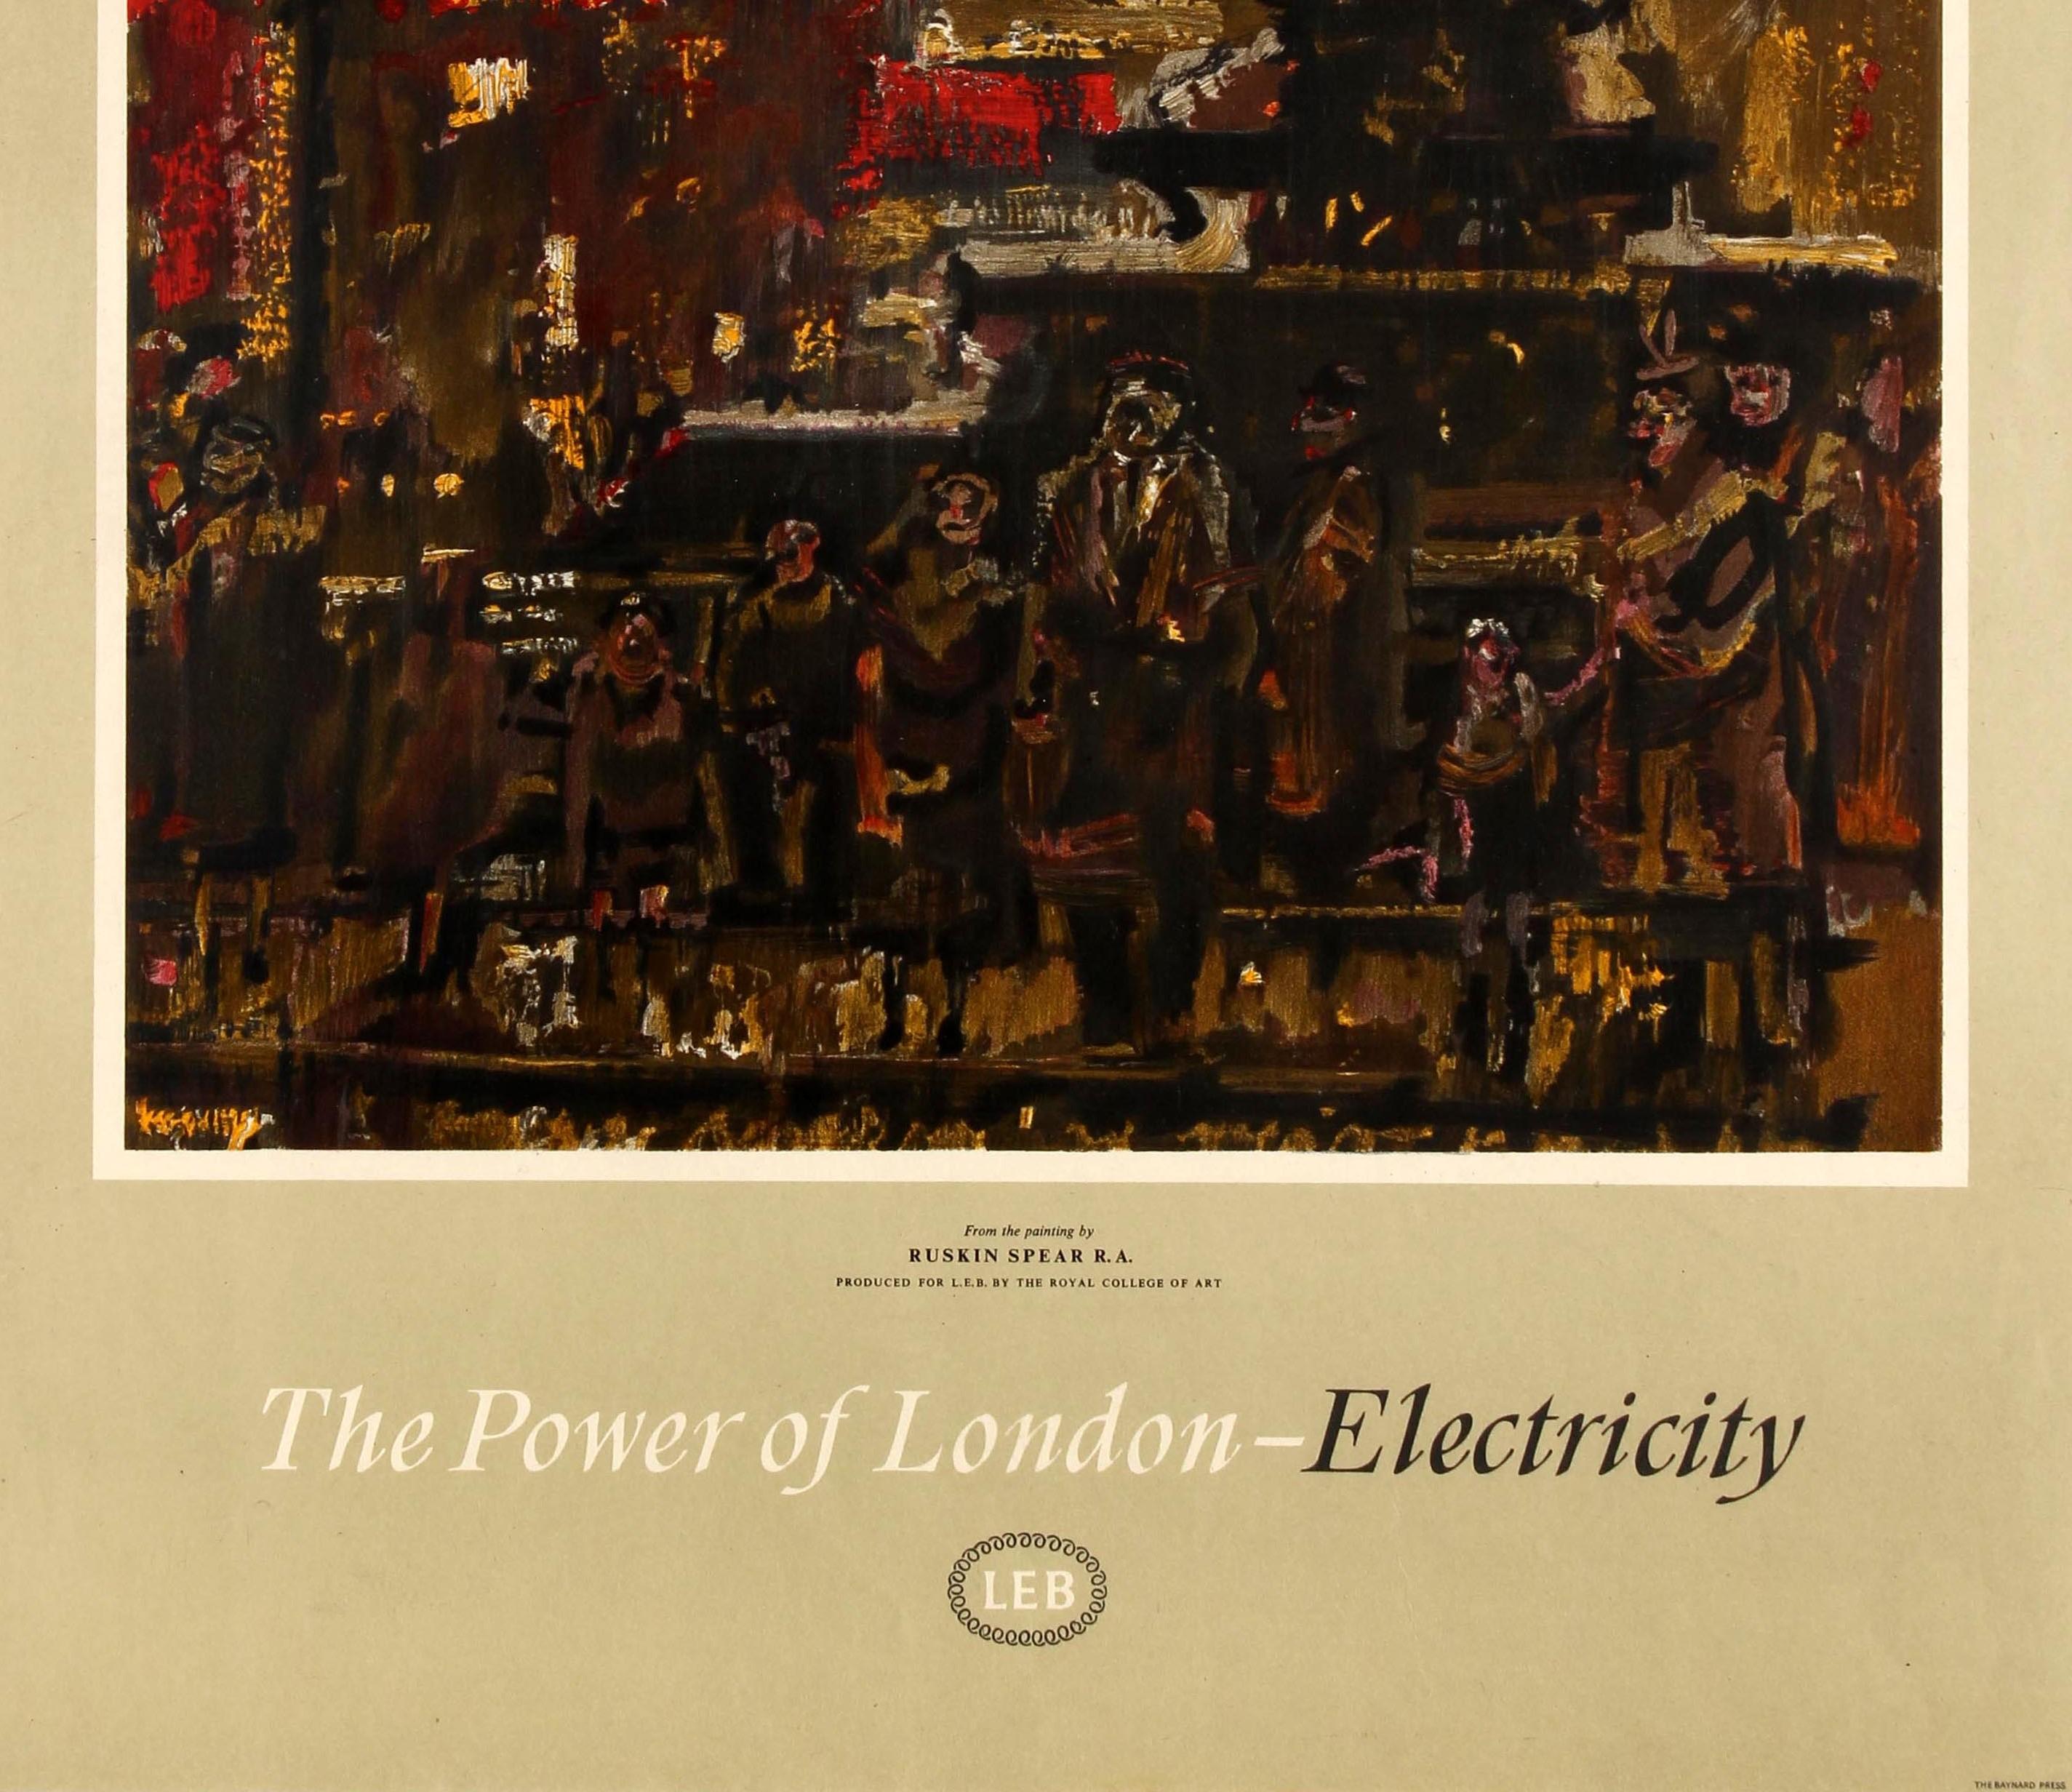 Affiche originale vintage du London Electricity Board intitulée The Power of London - Electricity (Le pouvoir de Londres - l'électricité) présentant une illustration fantastique. La peinture de Ruskin Spear (1911-1990) montre Piccadilly Circus de